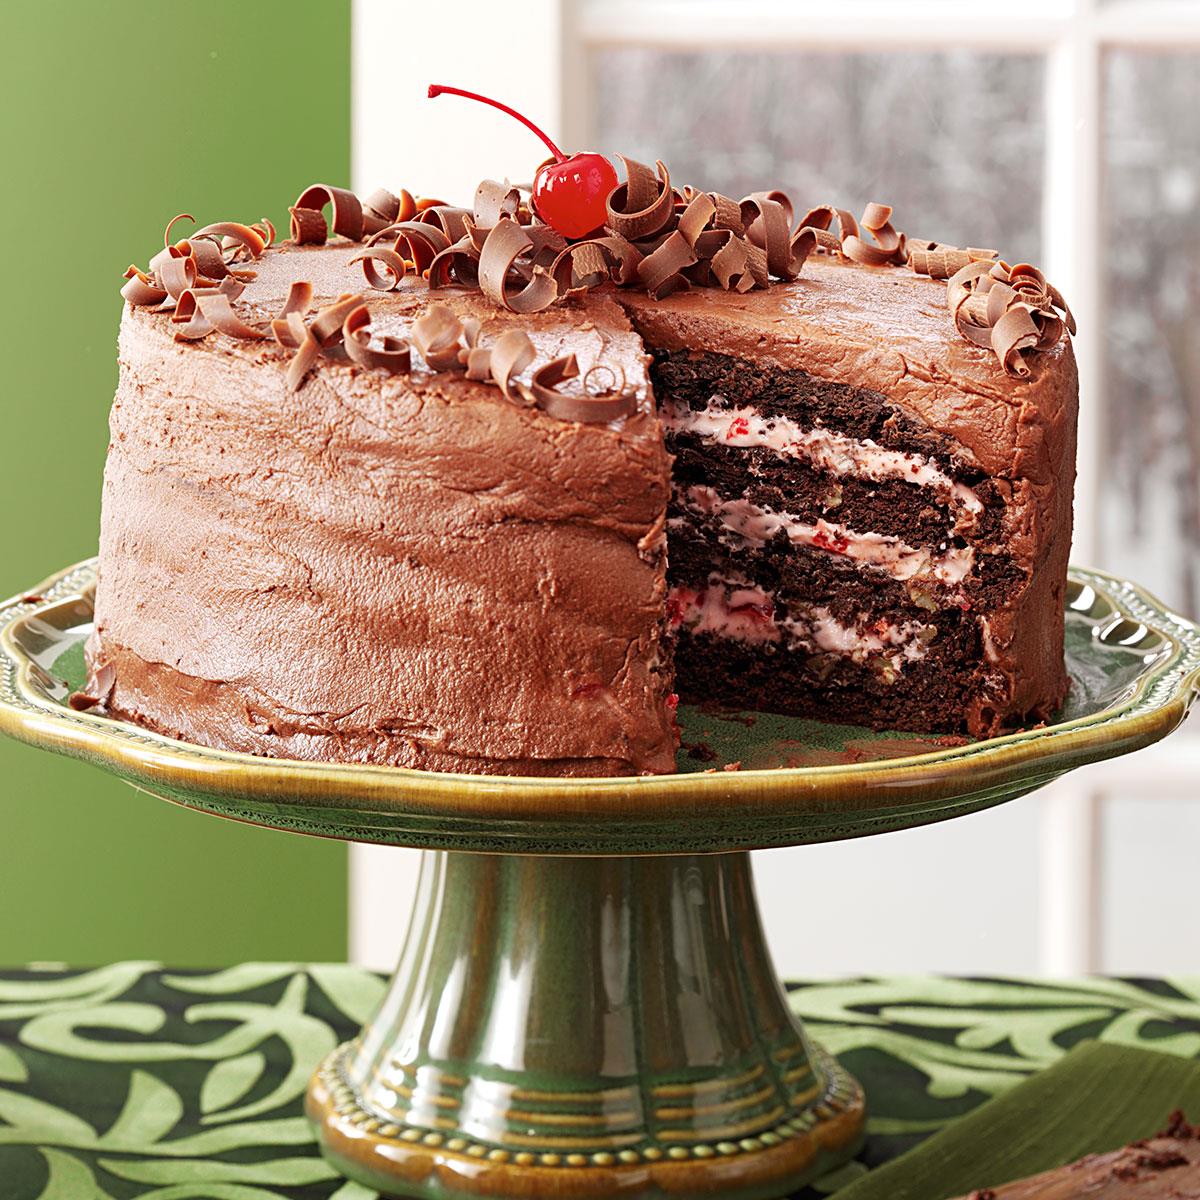 Cherry Chocolate Layer Cake Recipe: How to Make It